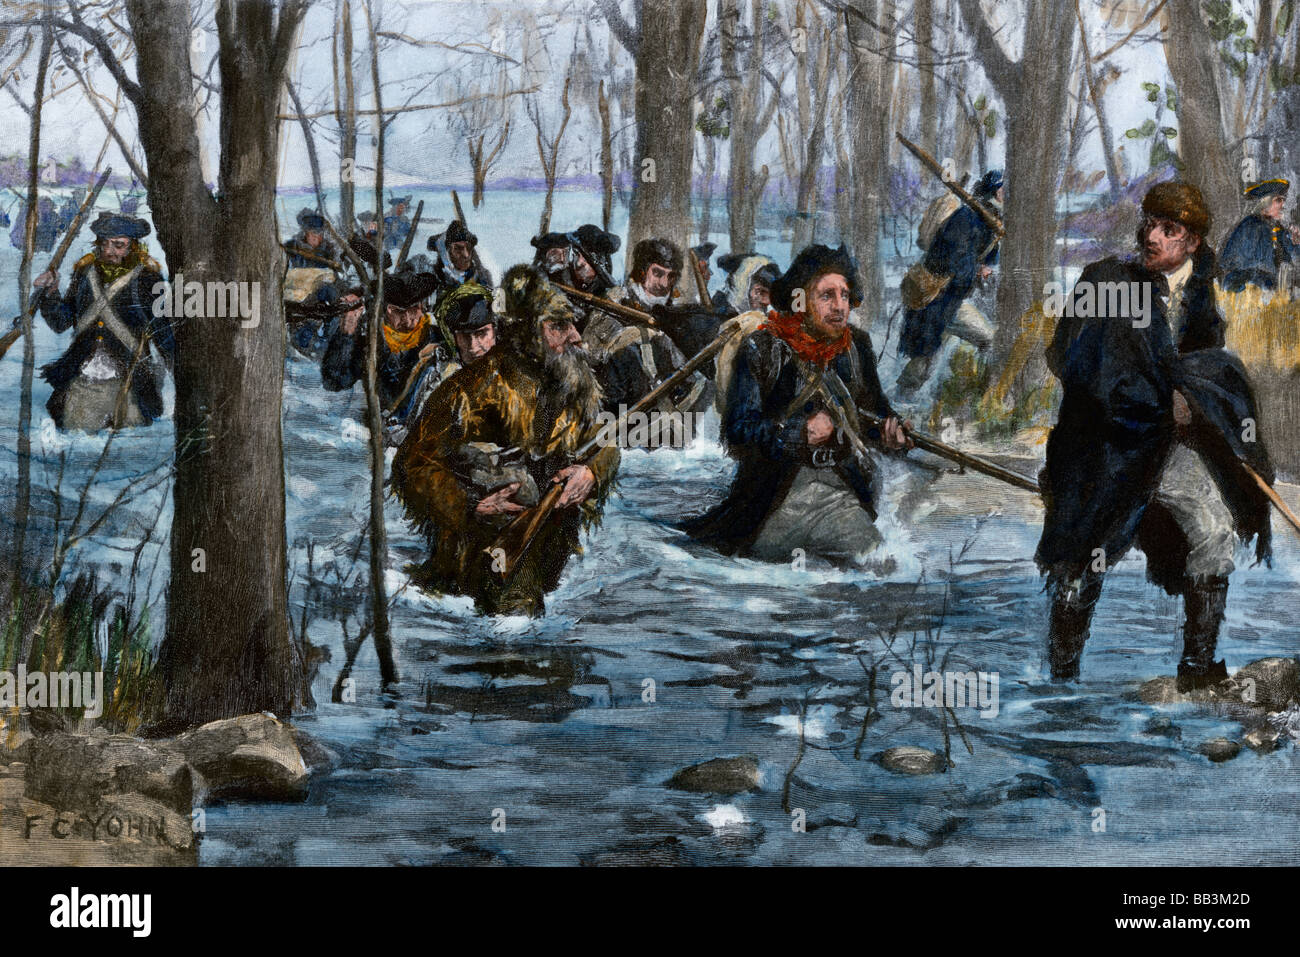 George Rogers Clark principali forze americane sul fiume Wabash durante la guerra rivoluzionaria. Colorate a mano i mezzitoni di un F. C. Yohn illustrazione Foto Stock